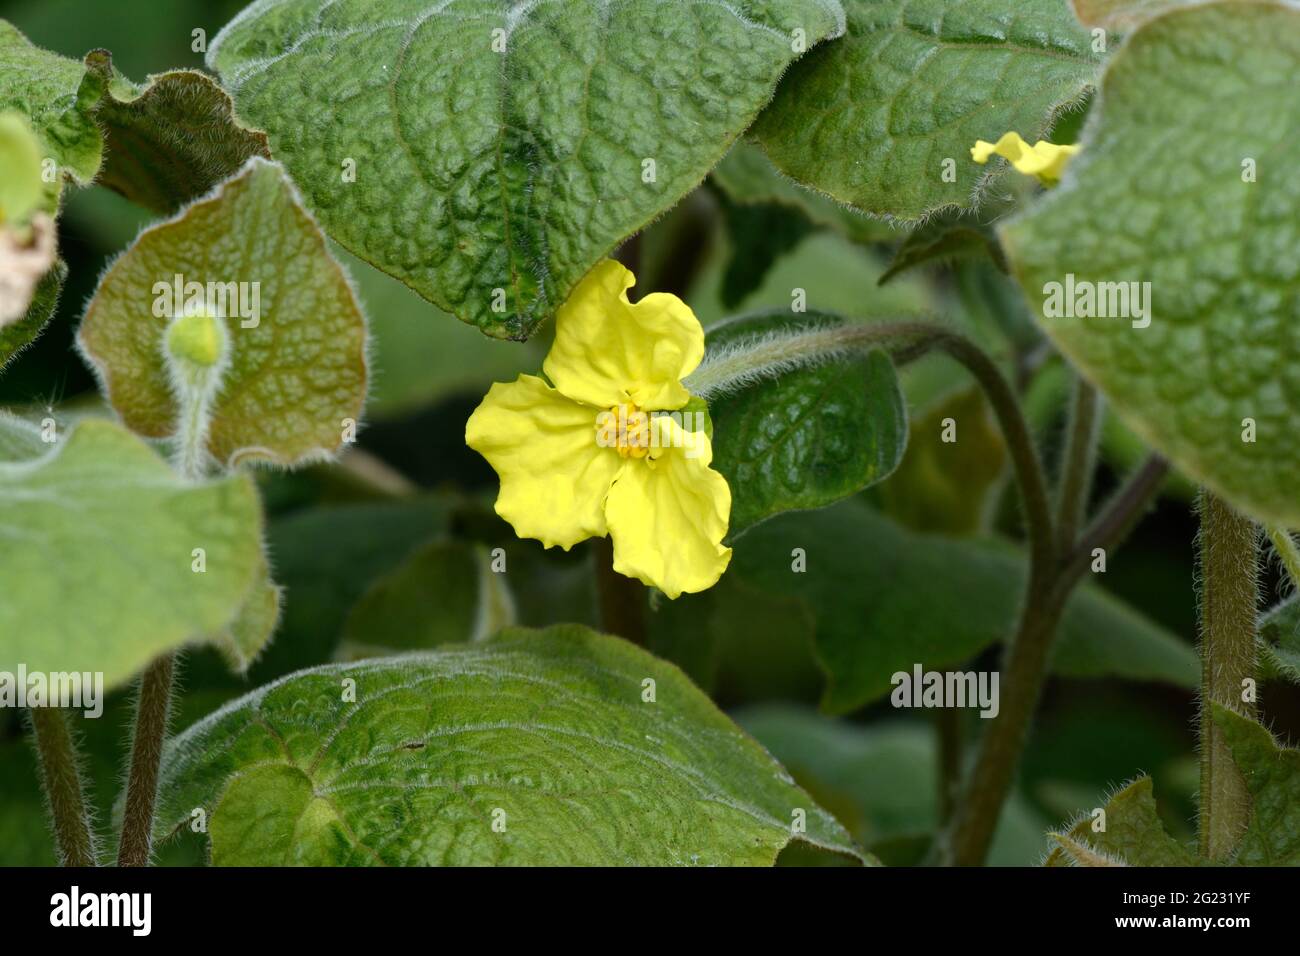 Yelllow drei blättrige Blume von Saruma henryi oder aufrechten wilden Ingwer Stockfoto